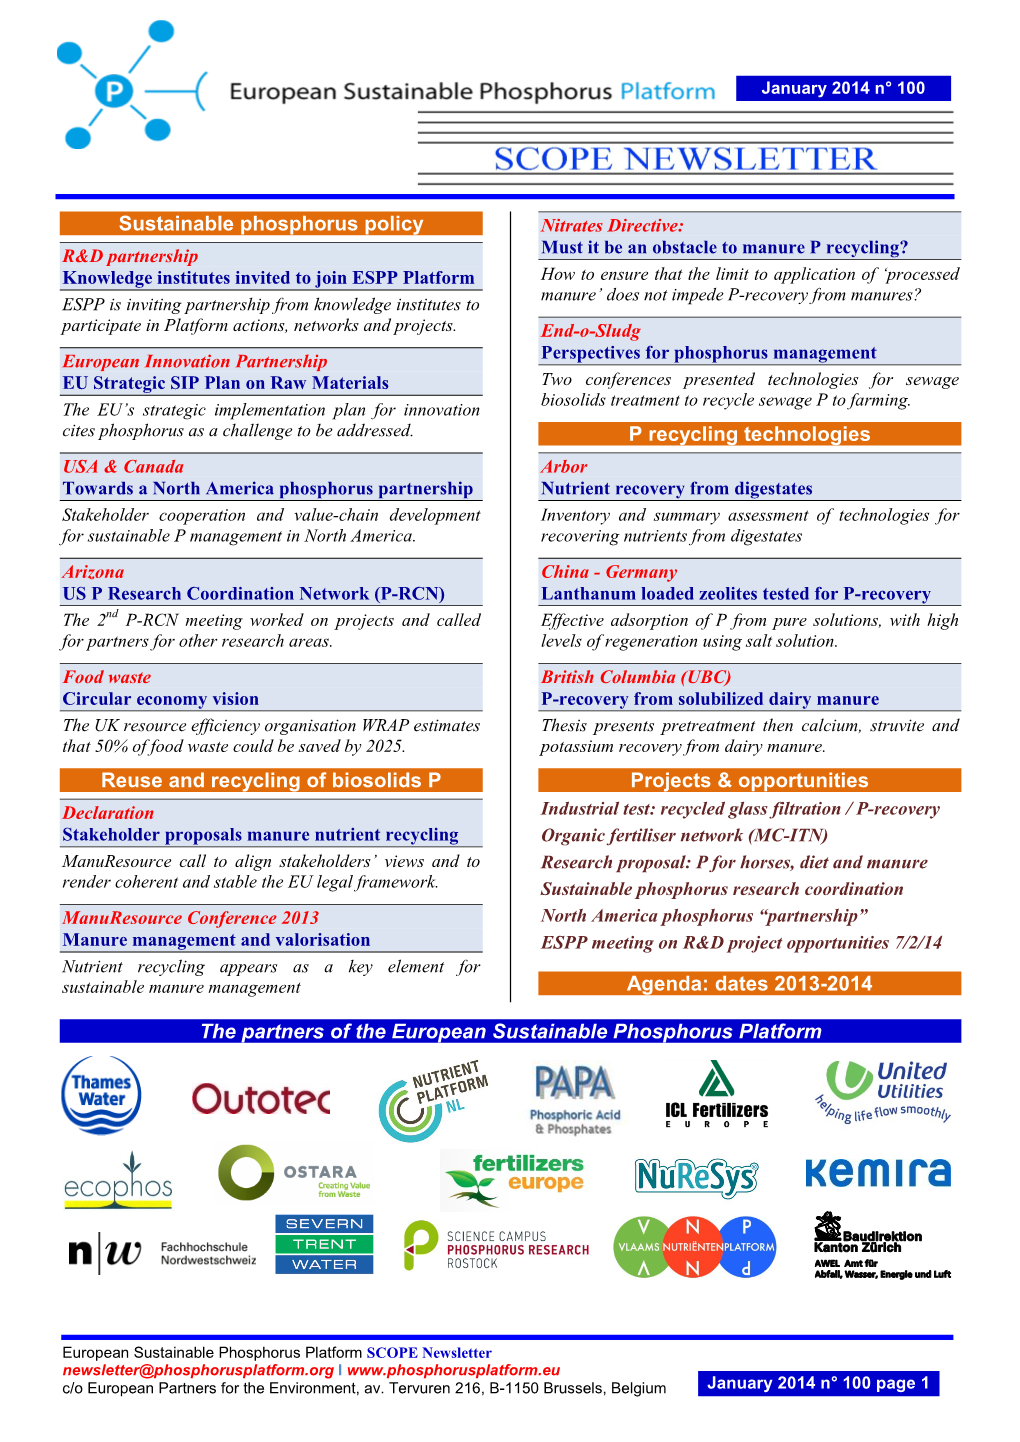 SCOPE Newsletter Newsletter@Phosphorusplatform.Org I C/O European Partners for the Environment, Av